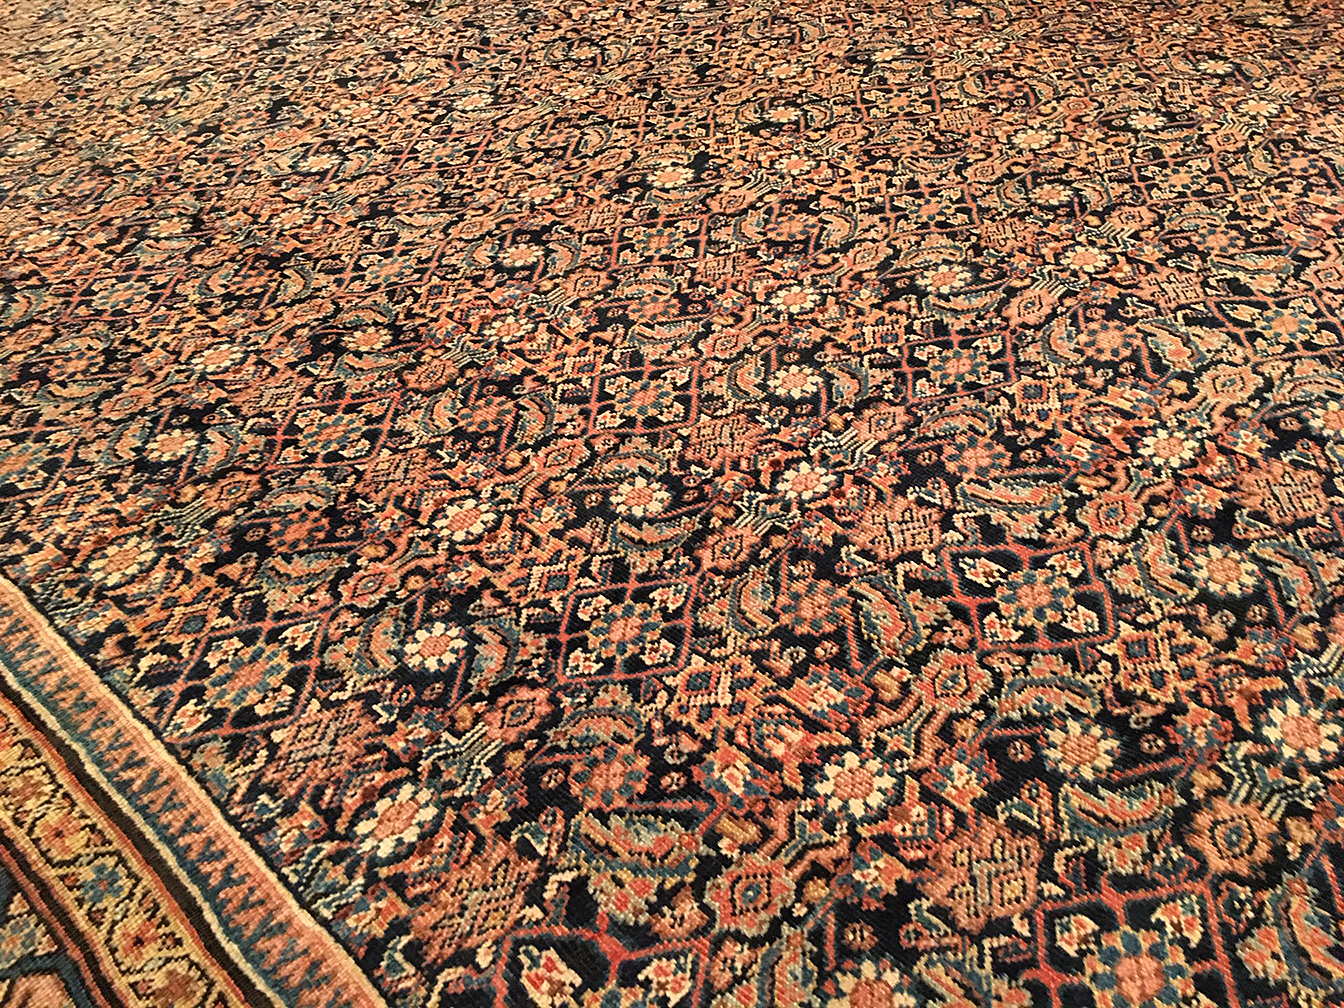 Antique sultan abad Carpet - # 54395